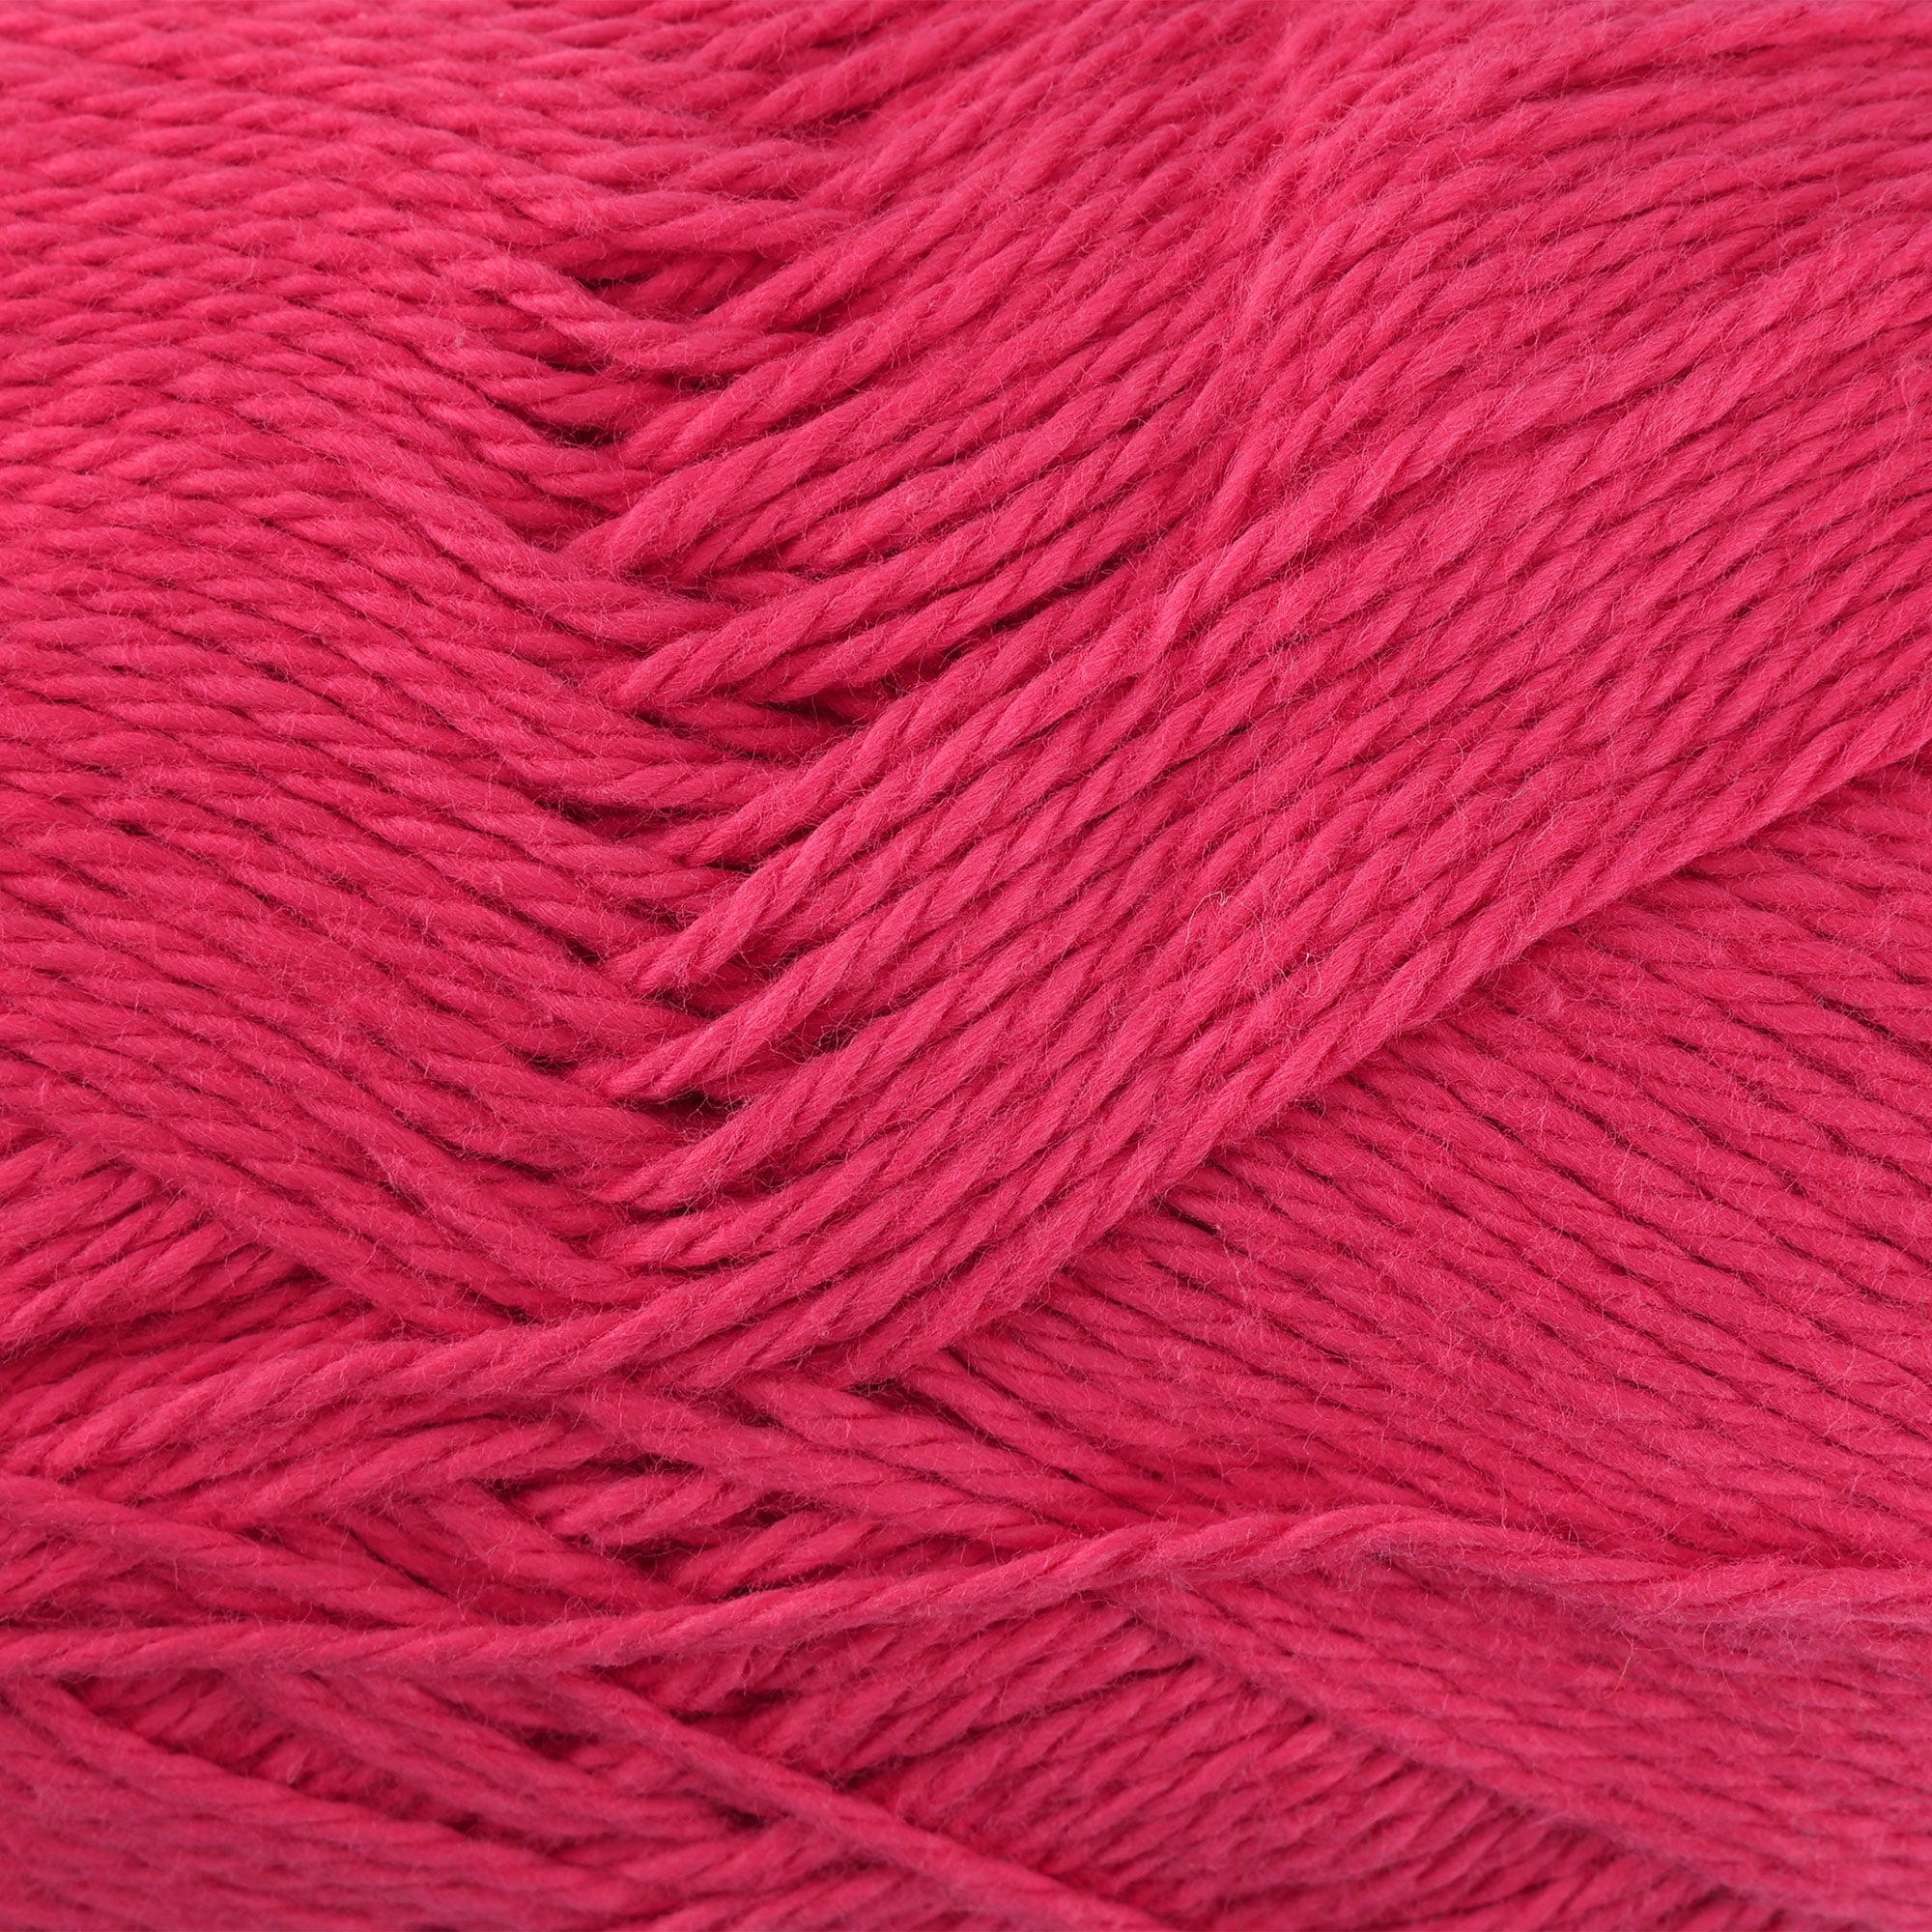 Crochet Cotton Yarn - #4 - Hot Pink - 50 gram skeins - 85 yds —